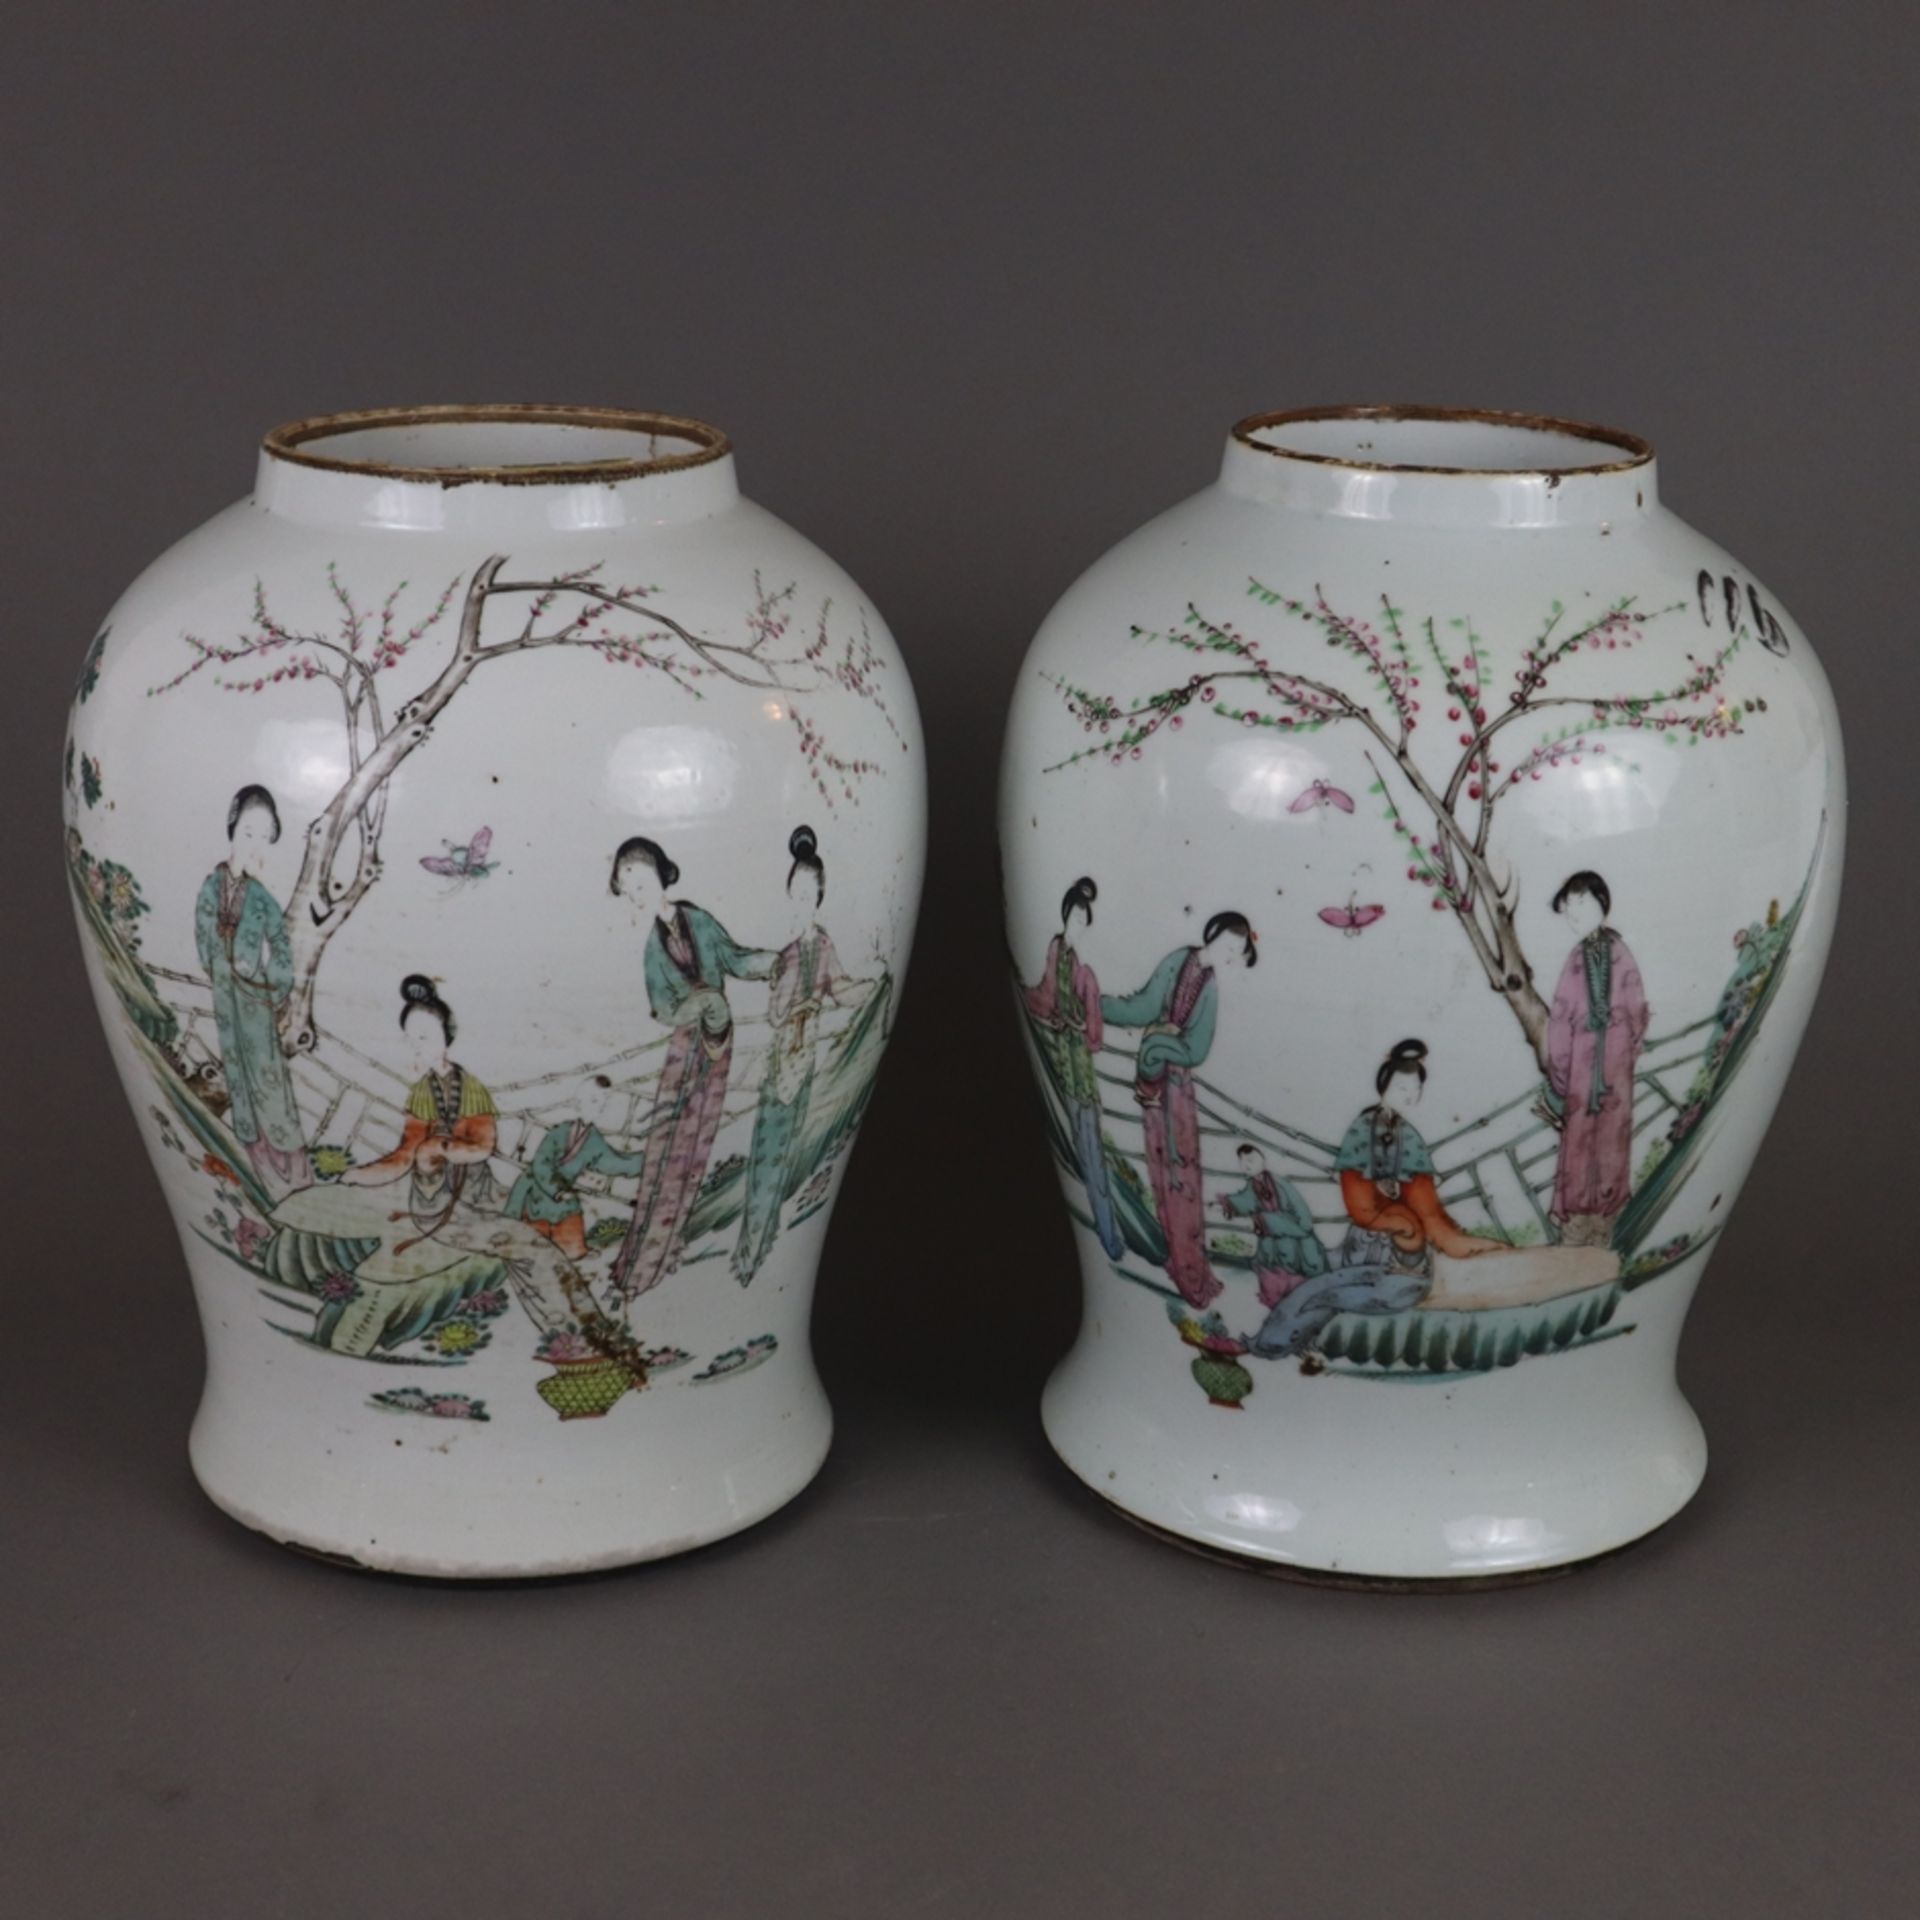 Ein Paar Famille rose-Vasen - China, späte Qing-Dynastie, Porzellan, polychrome Bemalung in der Far